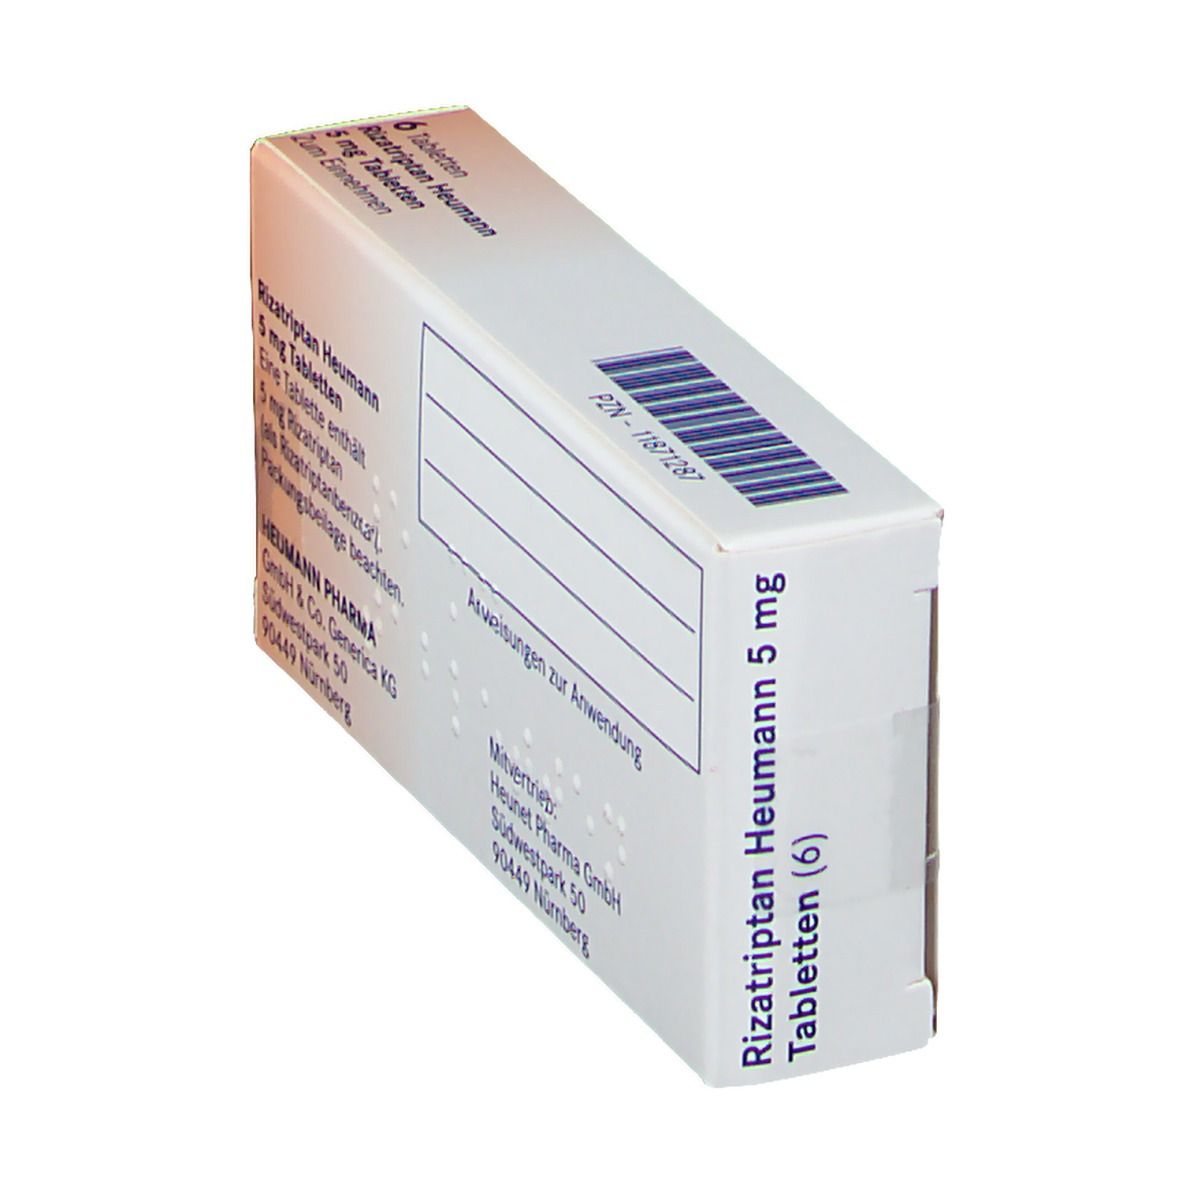 Rizatriptan Heumann 5 mg